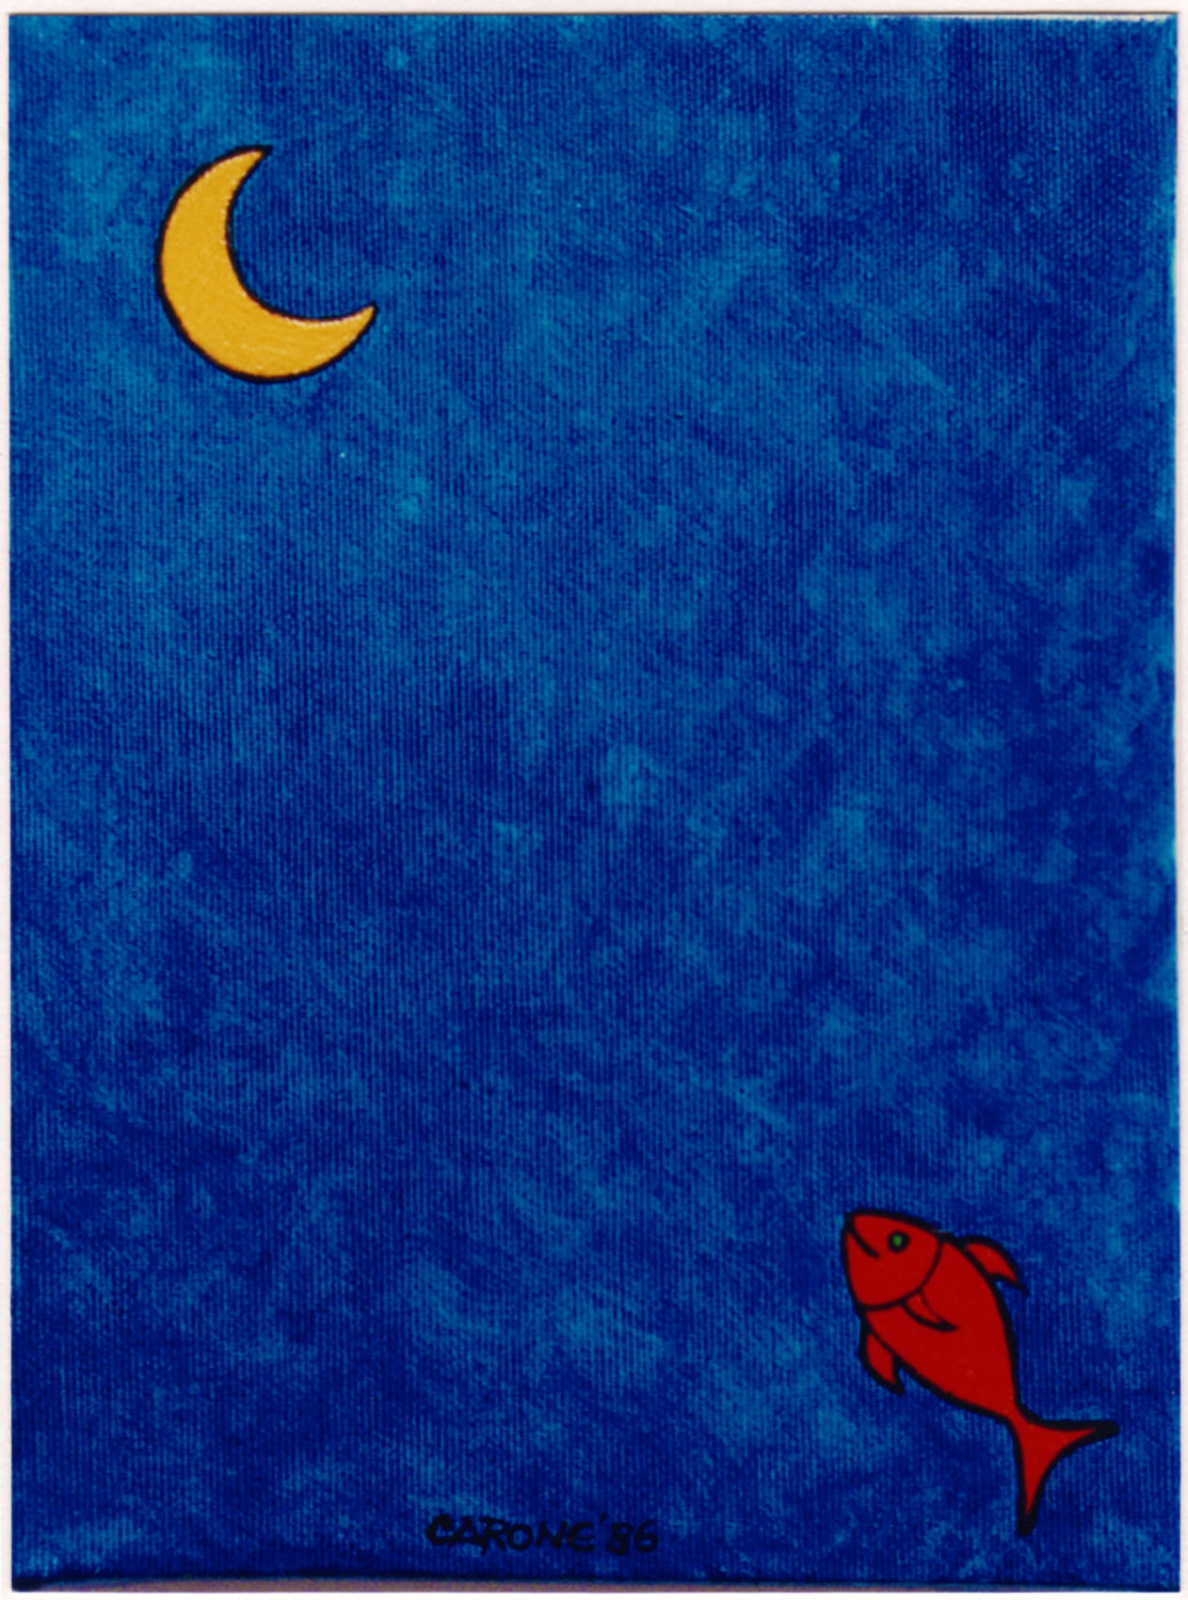 VOGLIOLALUNA (pesce lunatico) . 1986 - colori acrilici su tela. cm.24 x 18
Collezione Franco Toselli, Milano